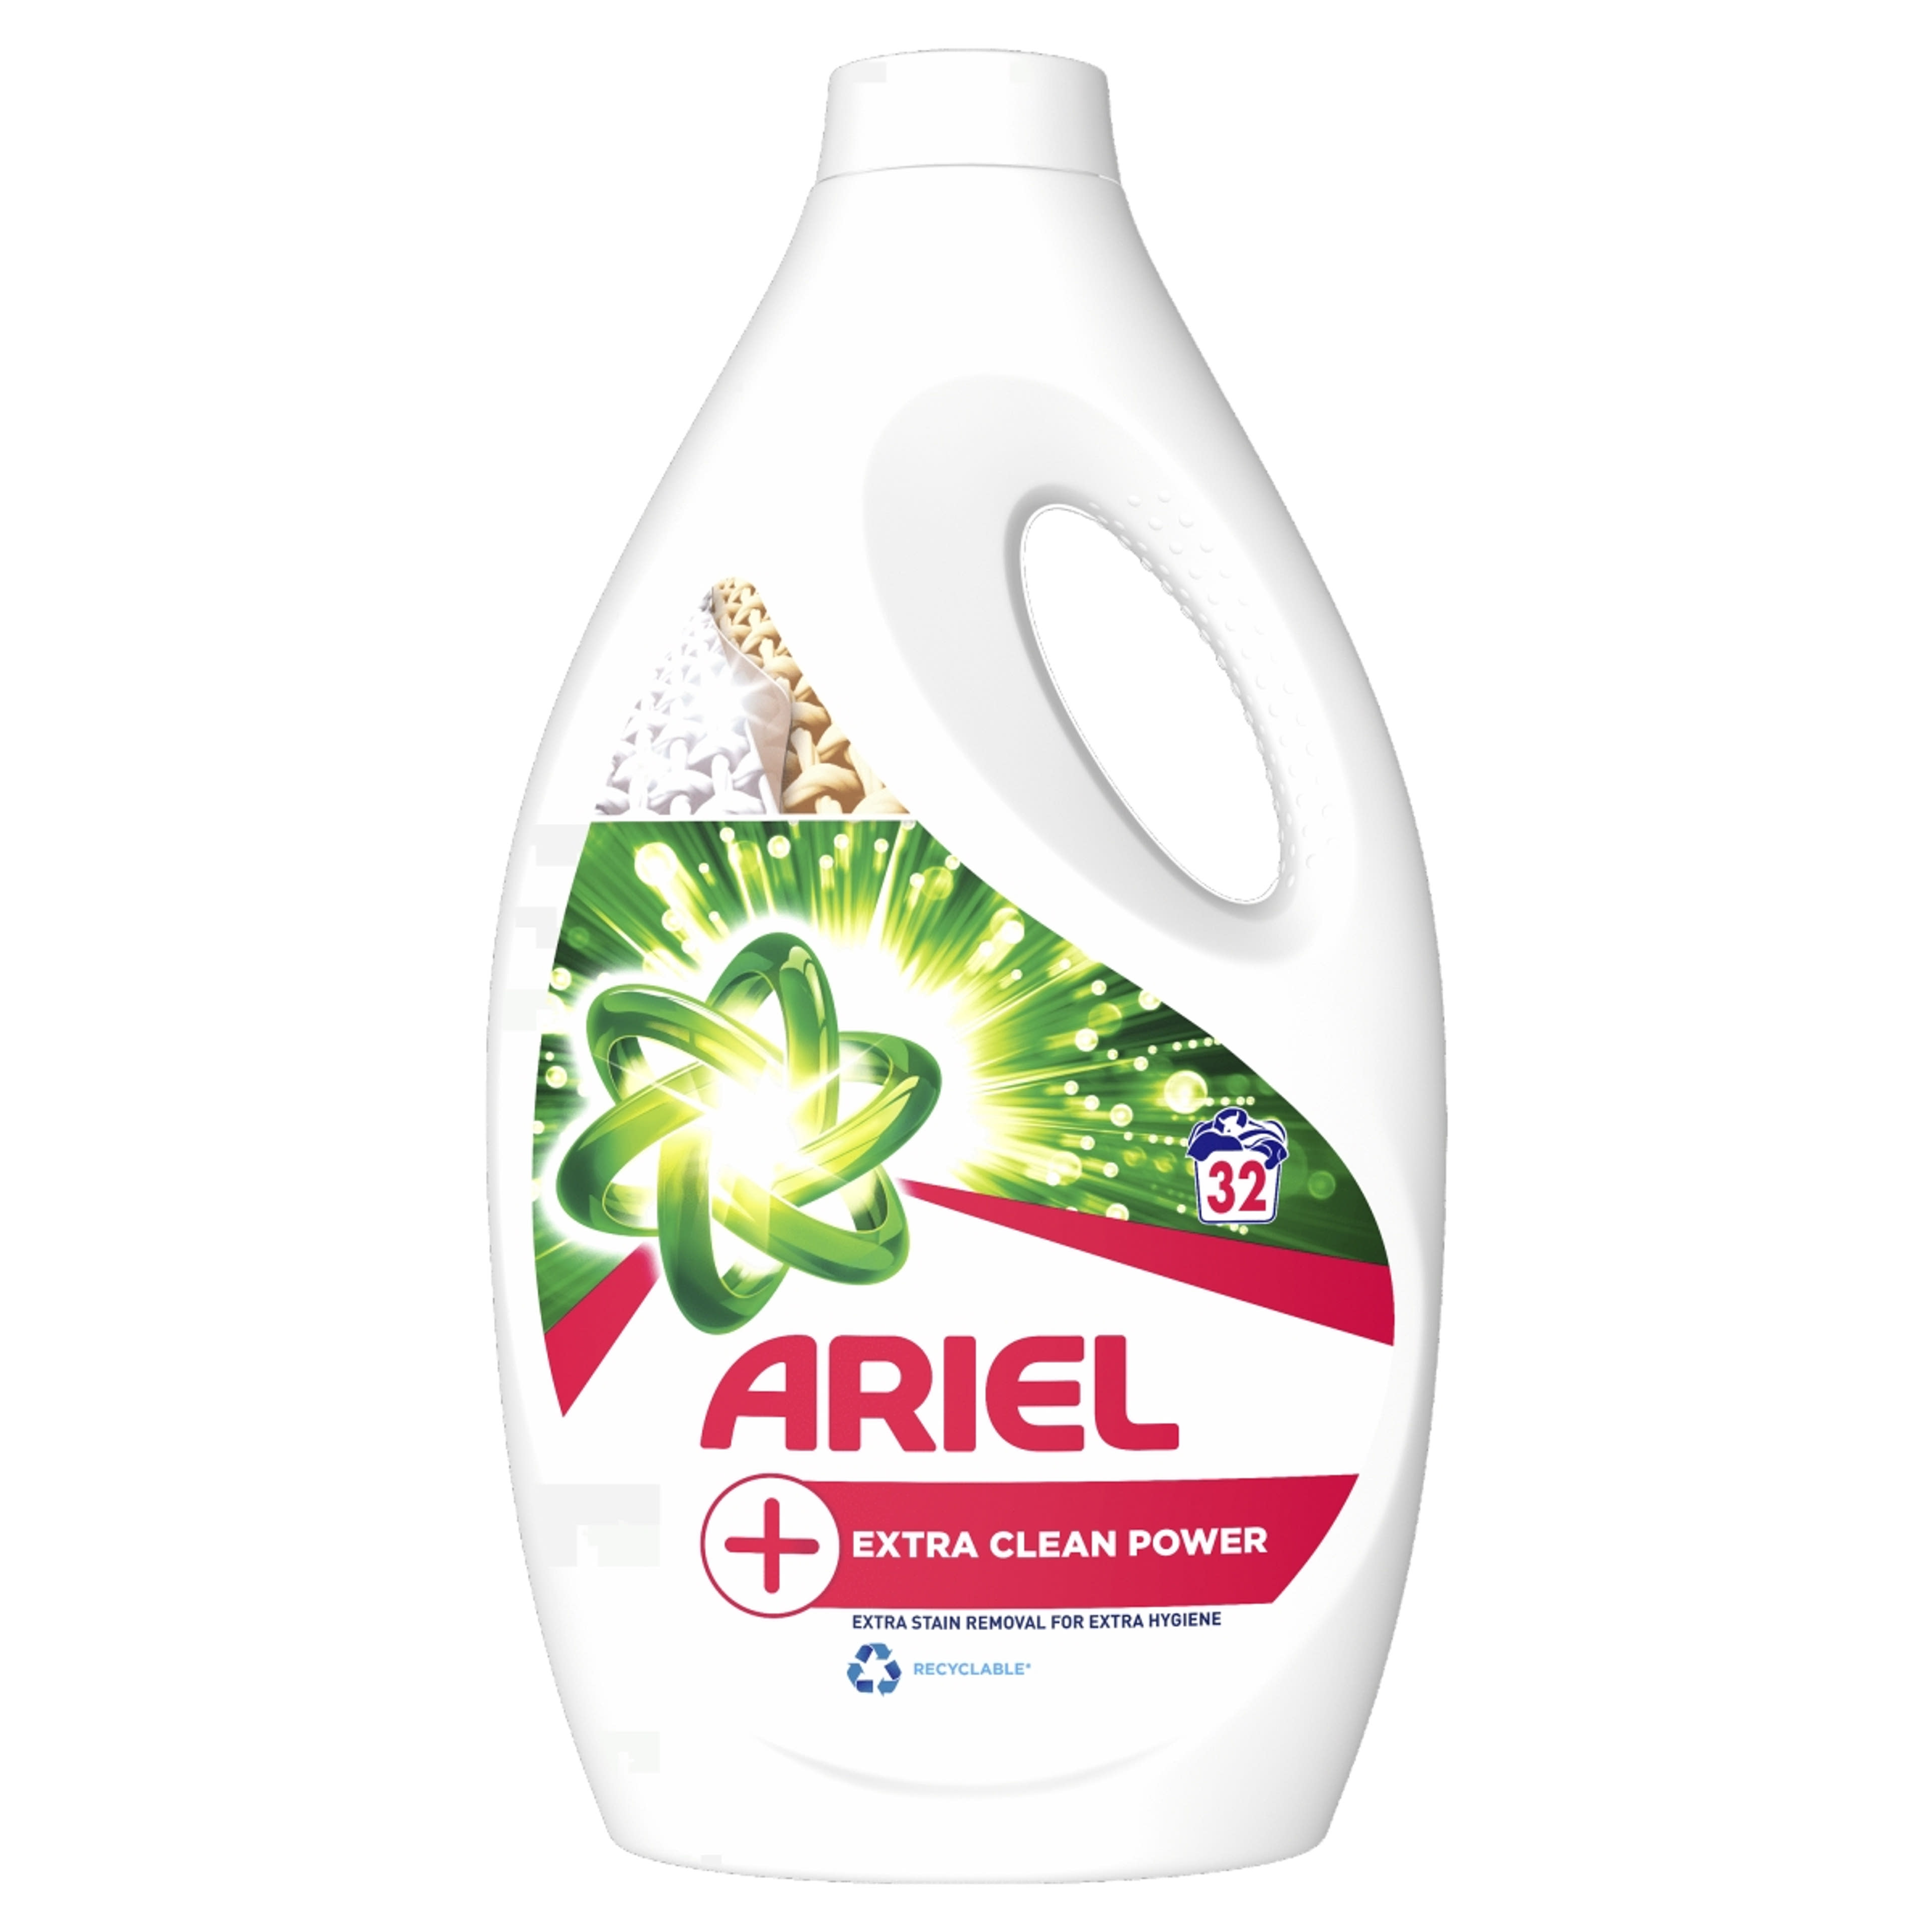 Ariel +Extra Clean Power folyékony mosószer, 32 mosáshoz - 1760 ml-1